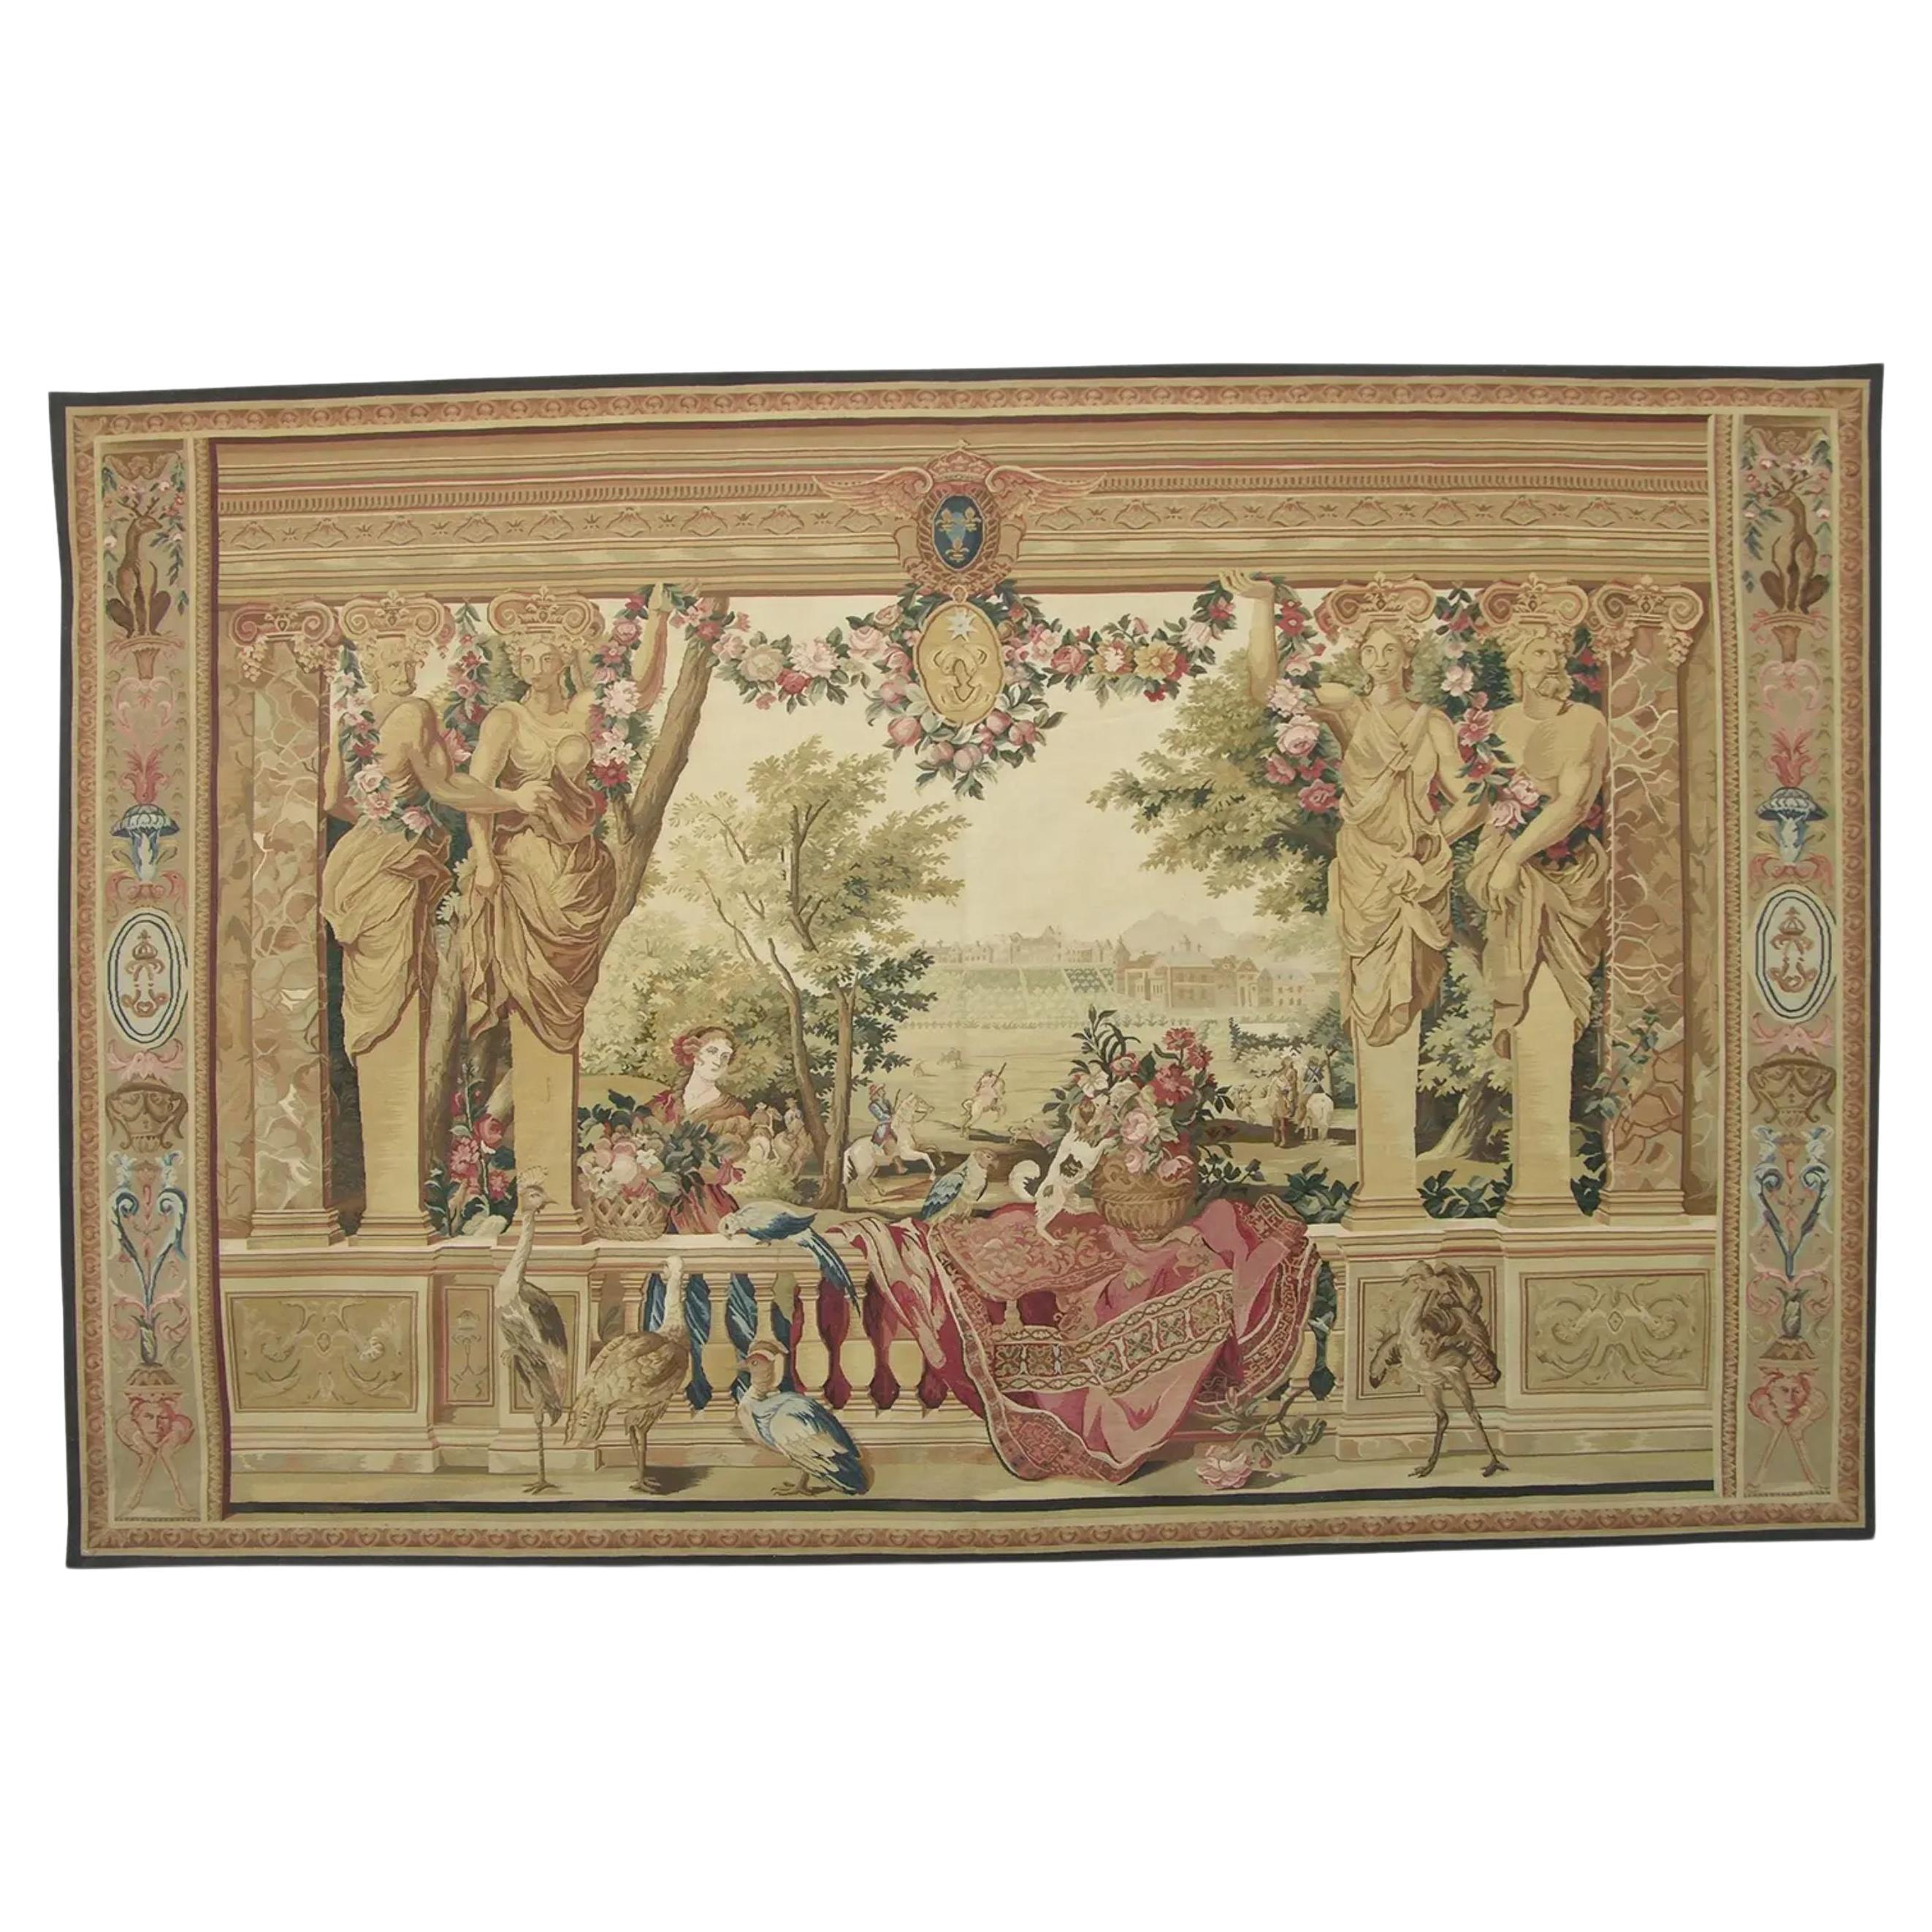 Wandteppich mit königlichen Figuren 9.9X6.4